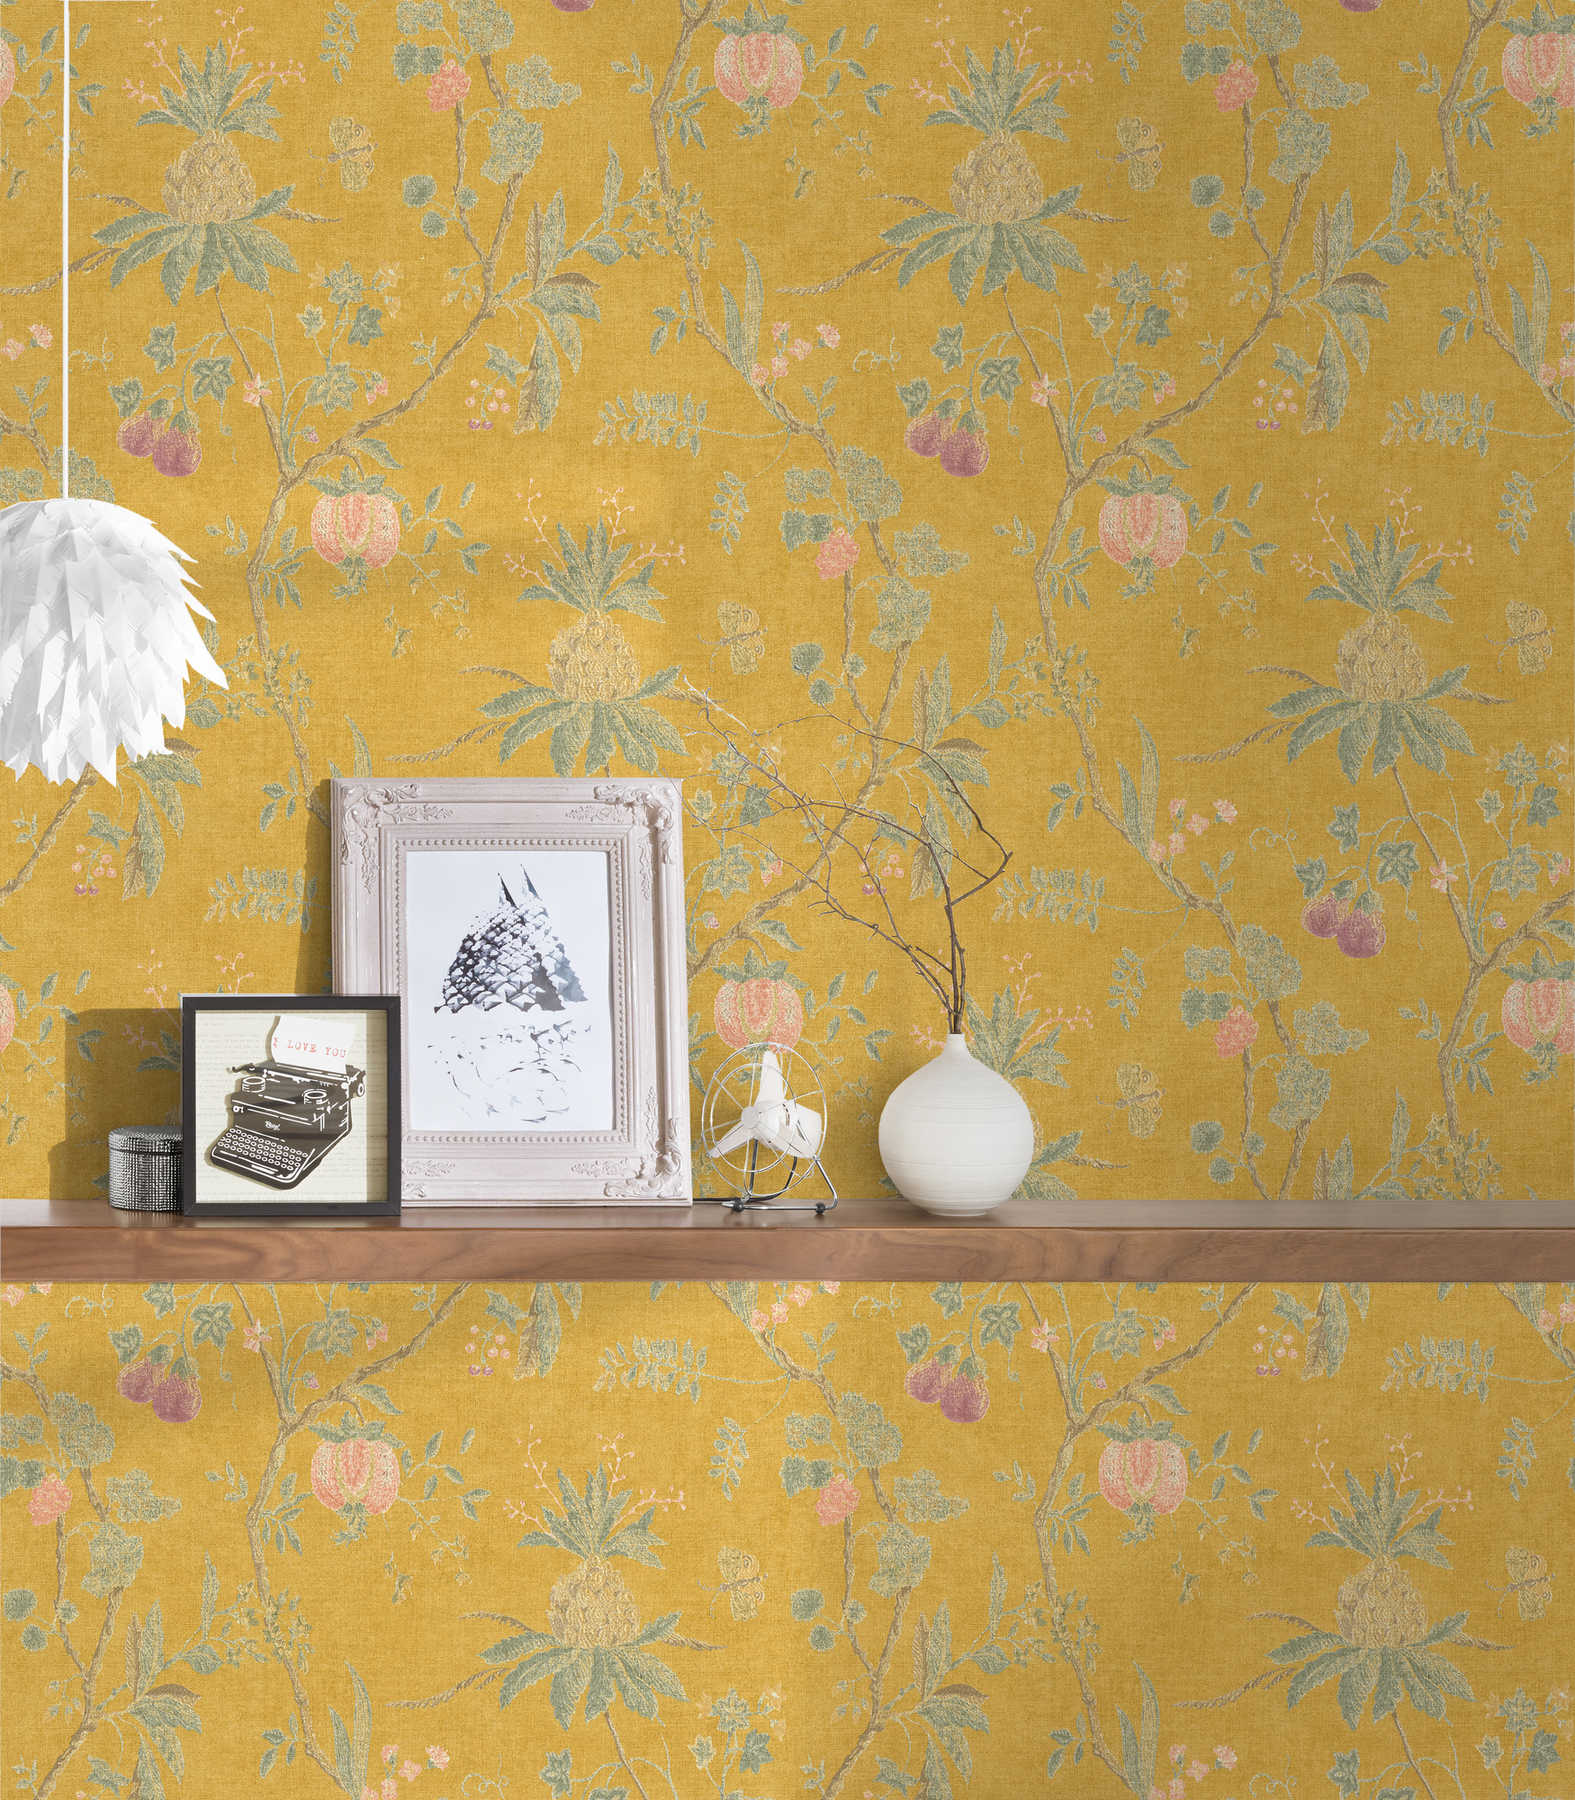             Papel pintado vintage con motivos florales y aspecto de lino - amarillo
        